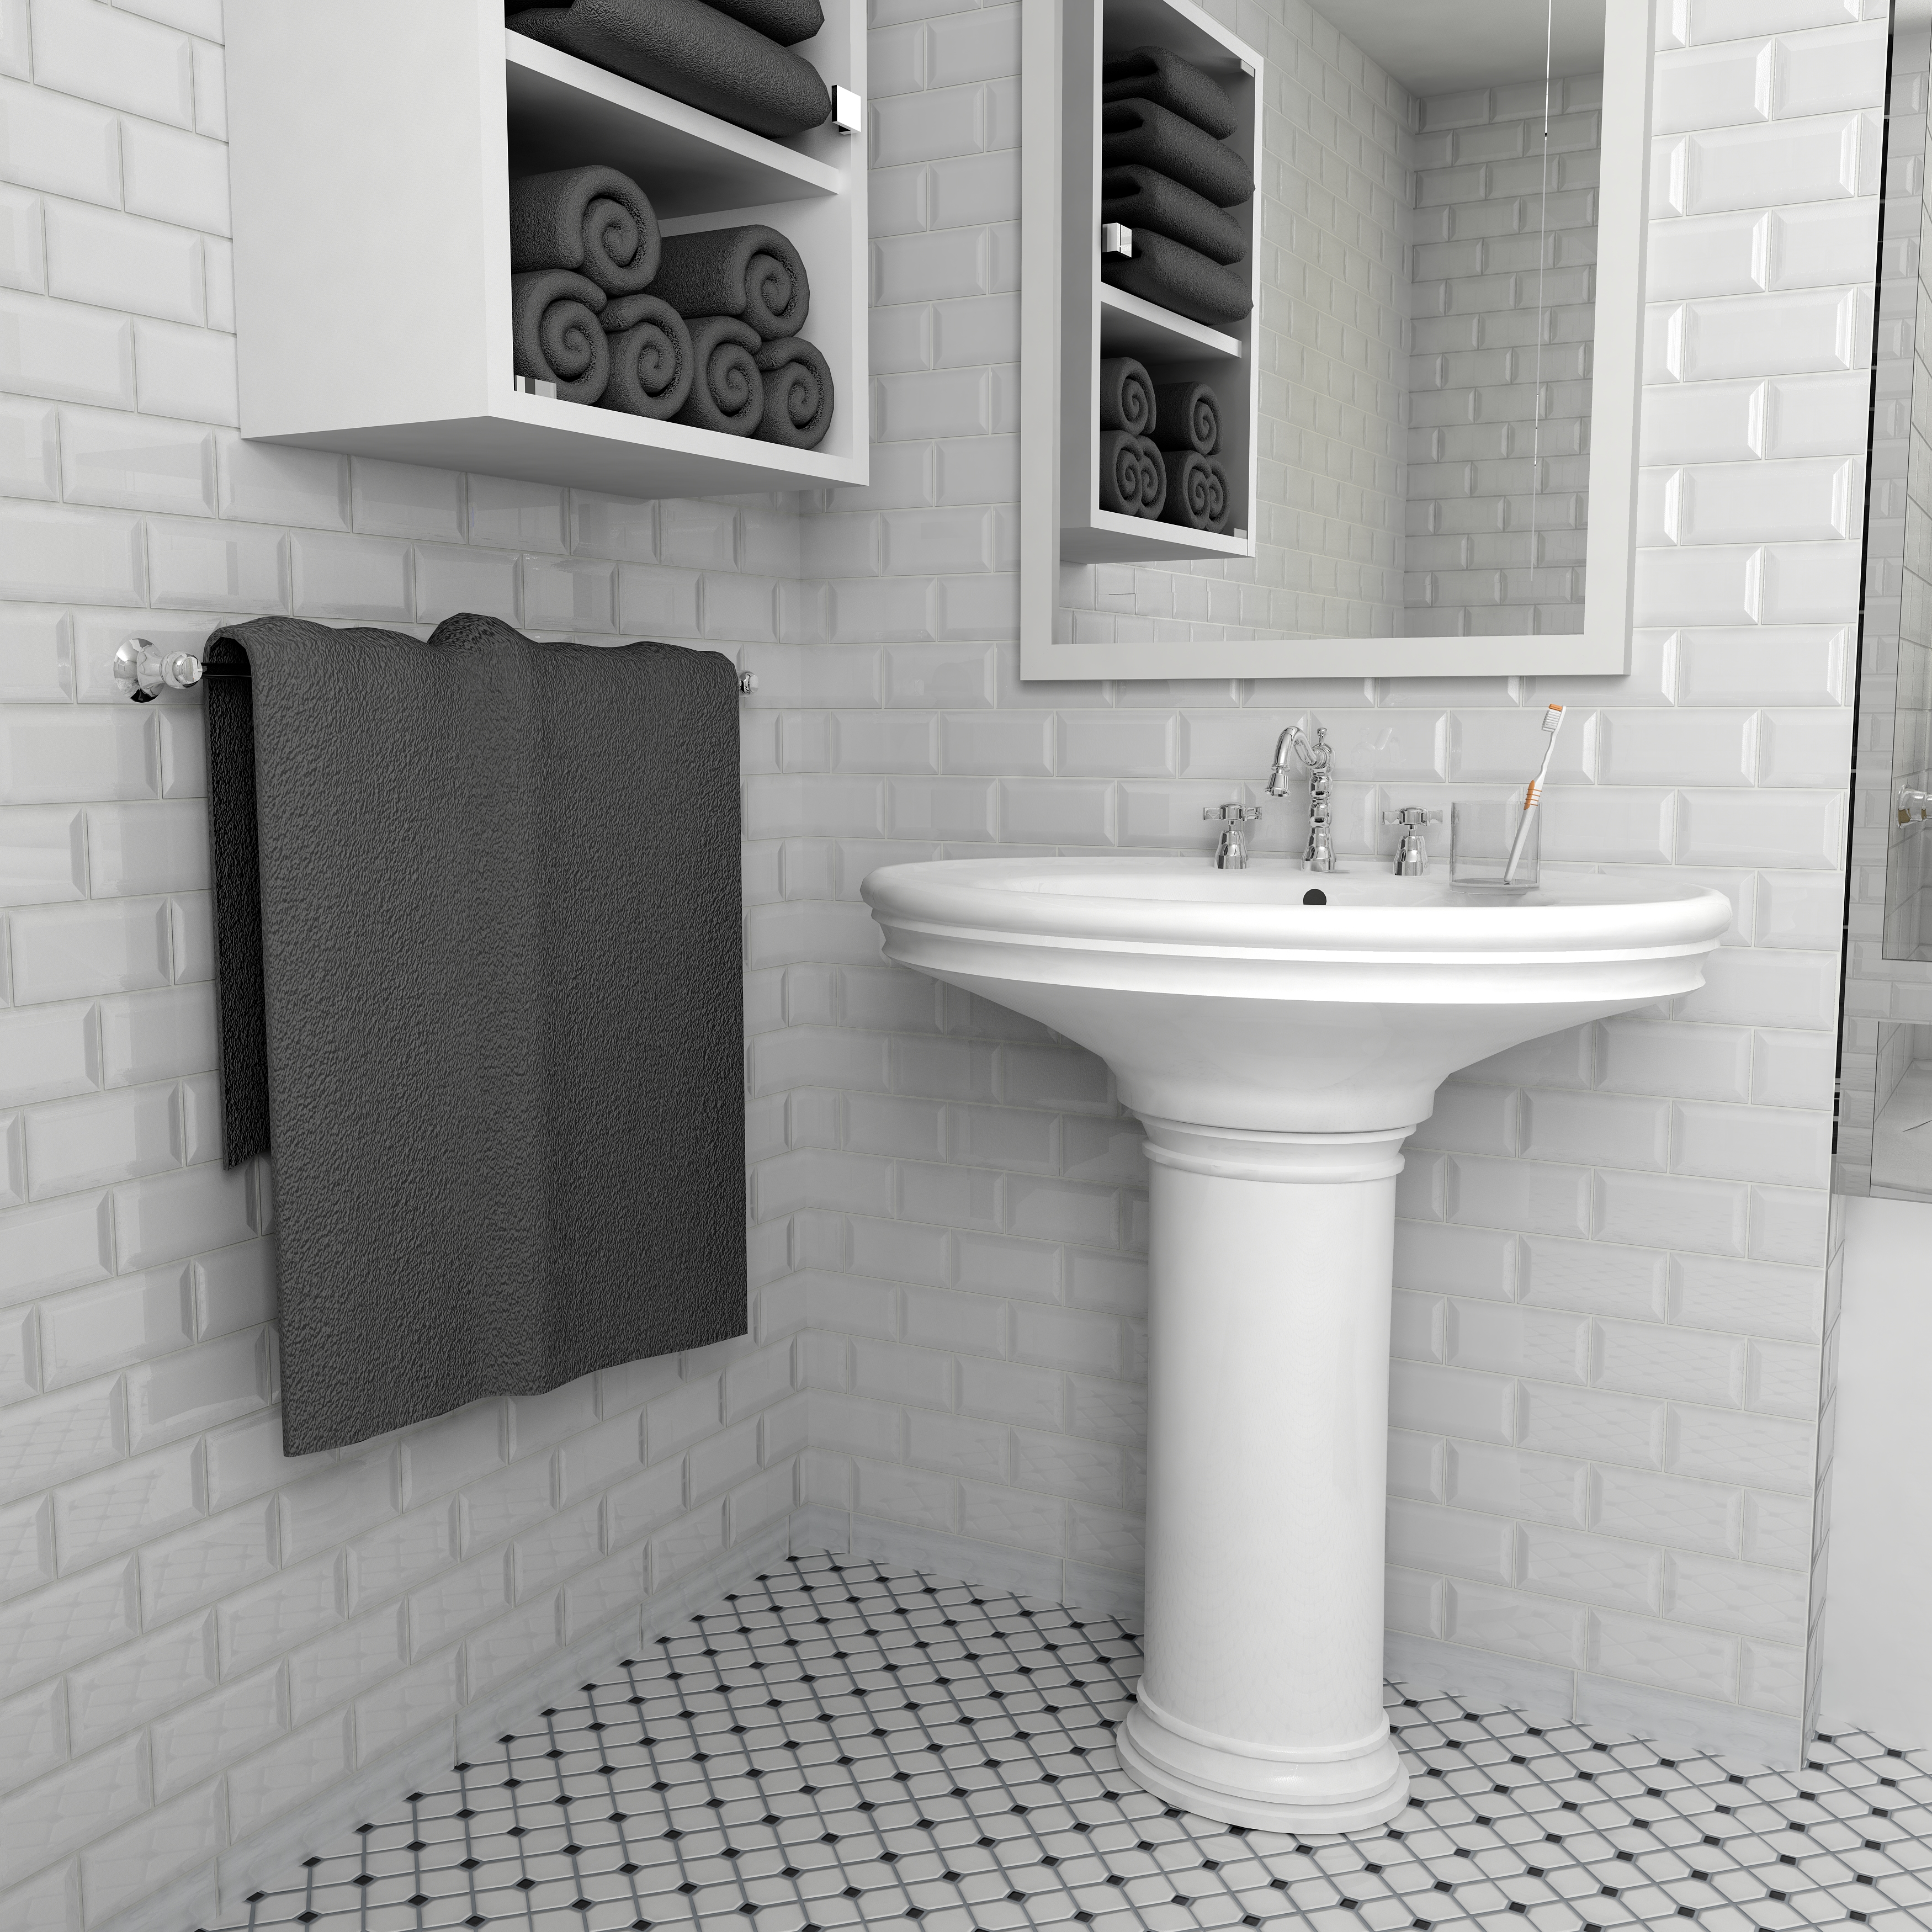 Park Slope Bathroom By Merola Tile Merola Tile On Visoft360